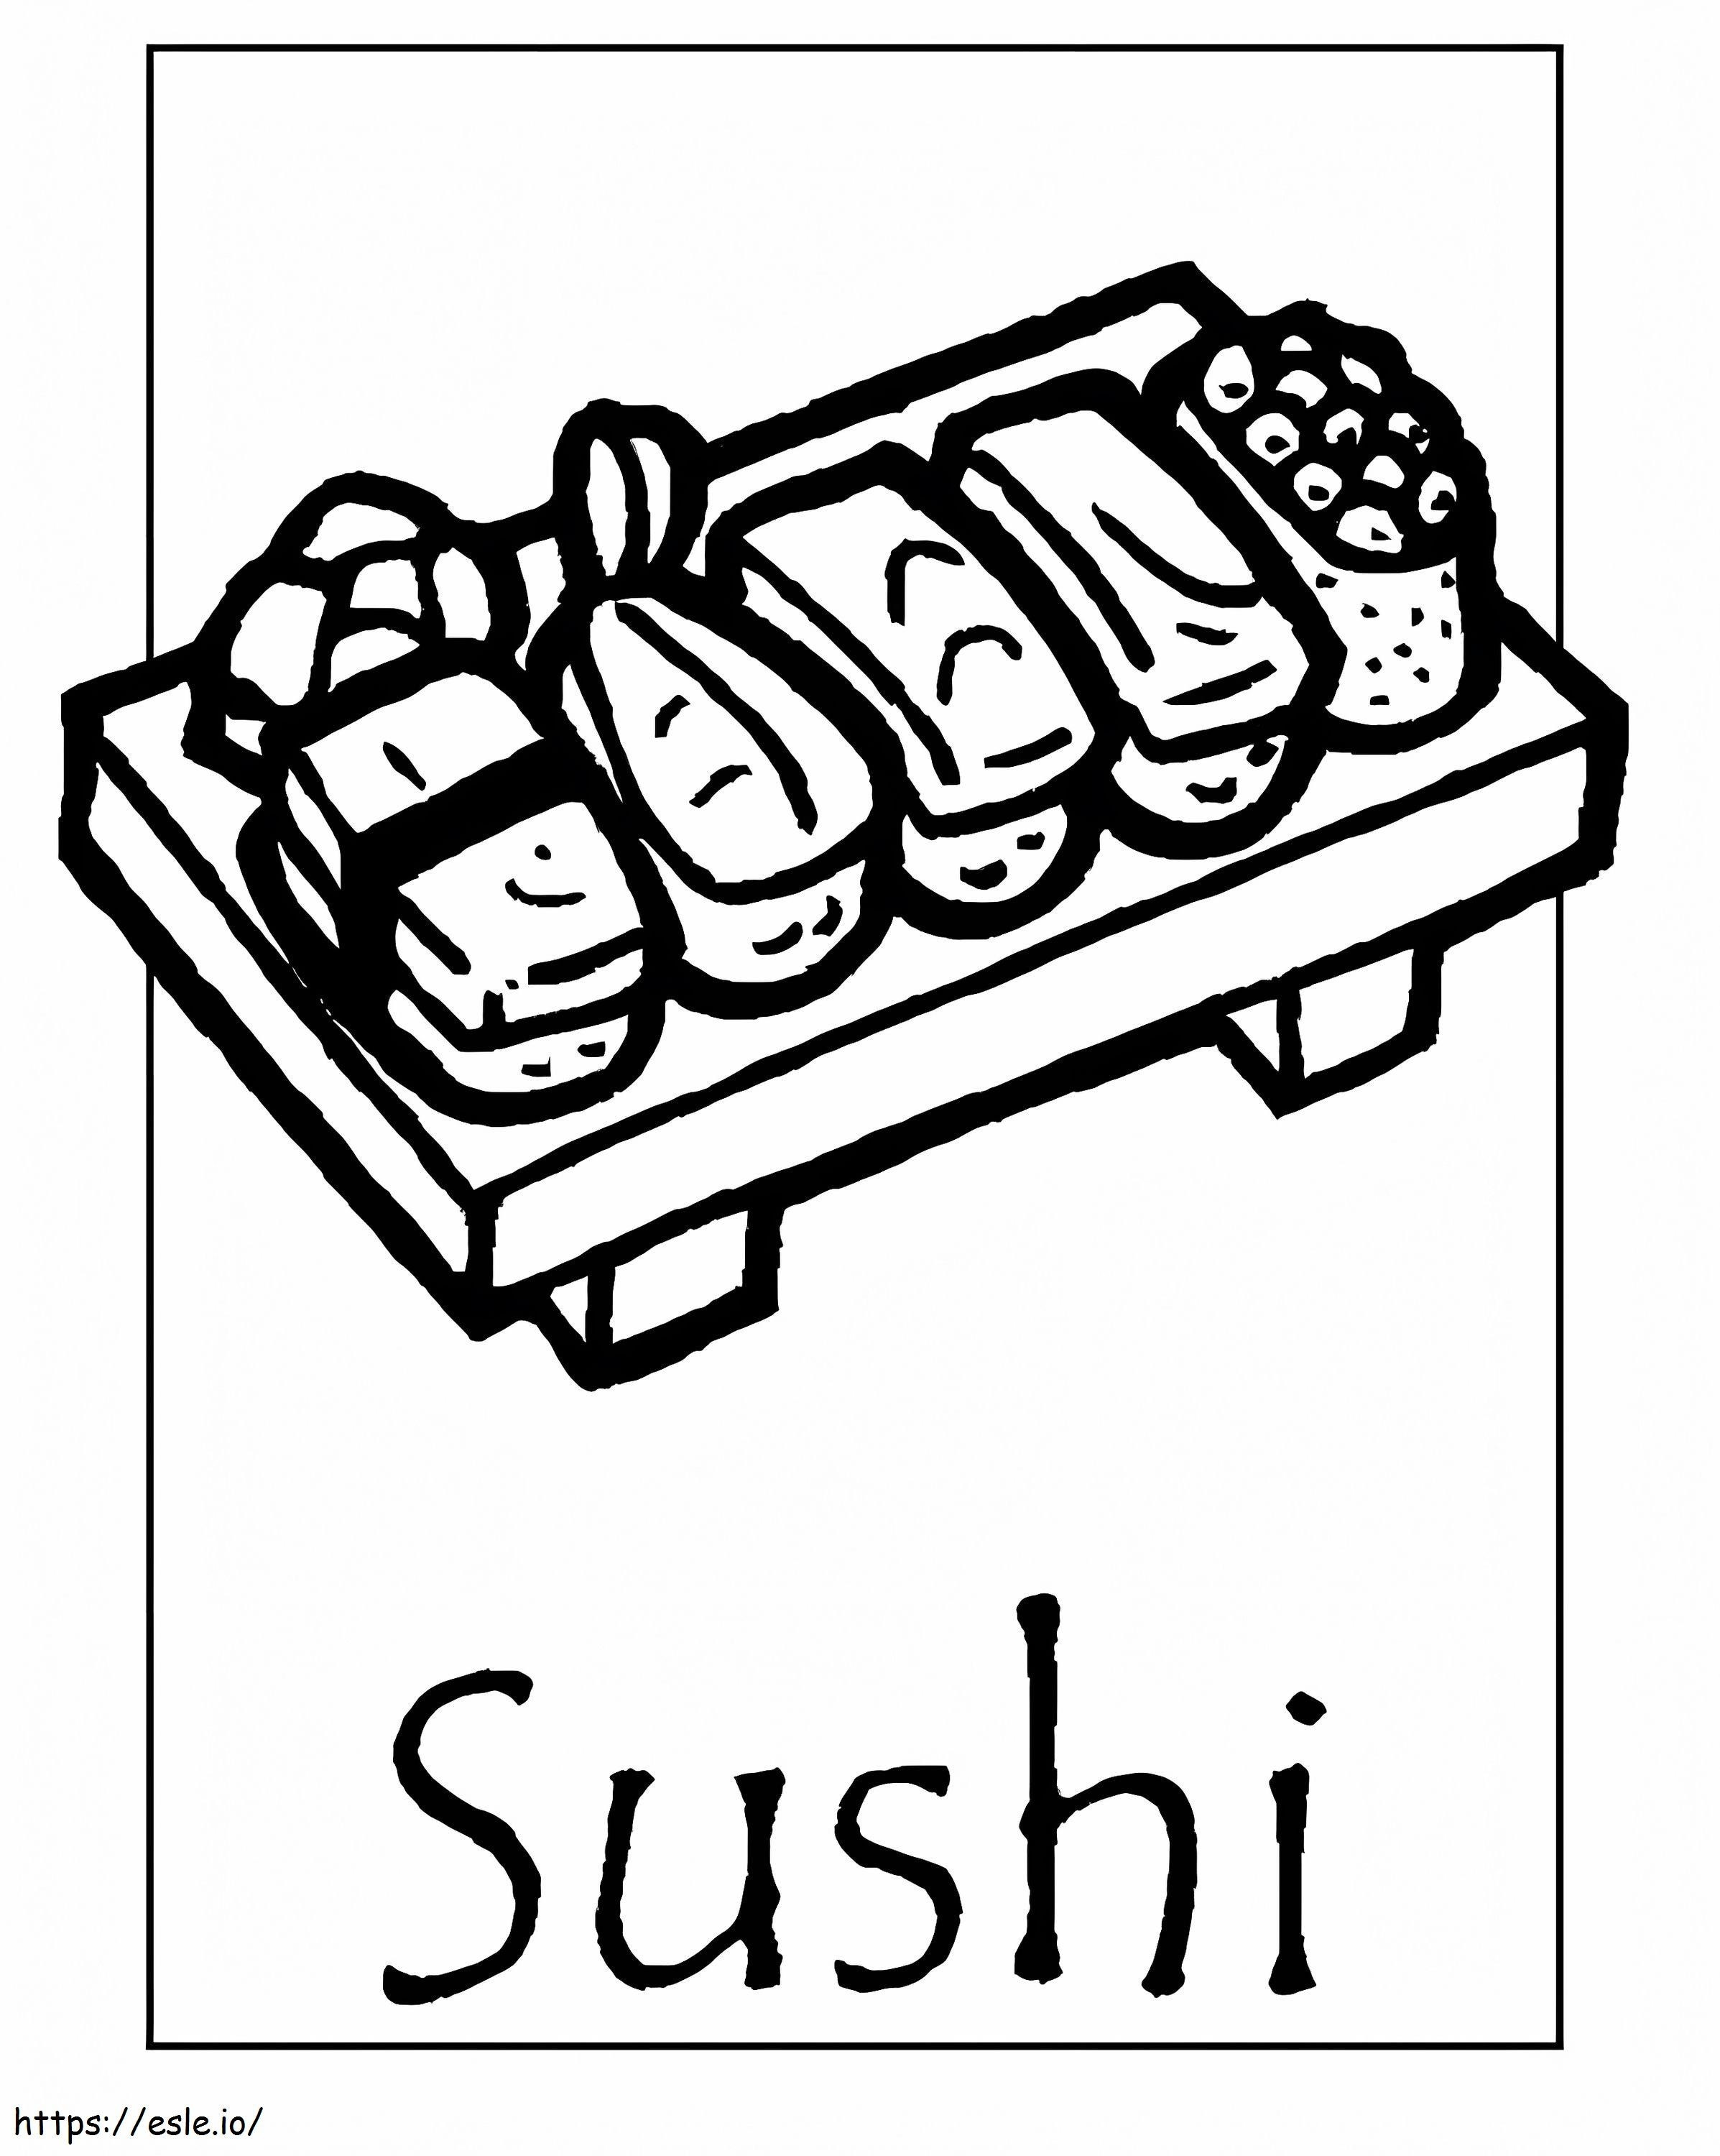 Sushi ausmalbilder